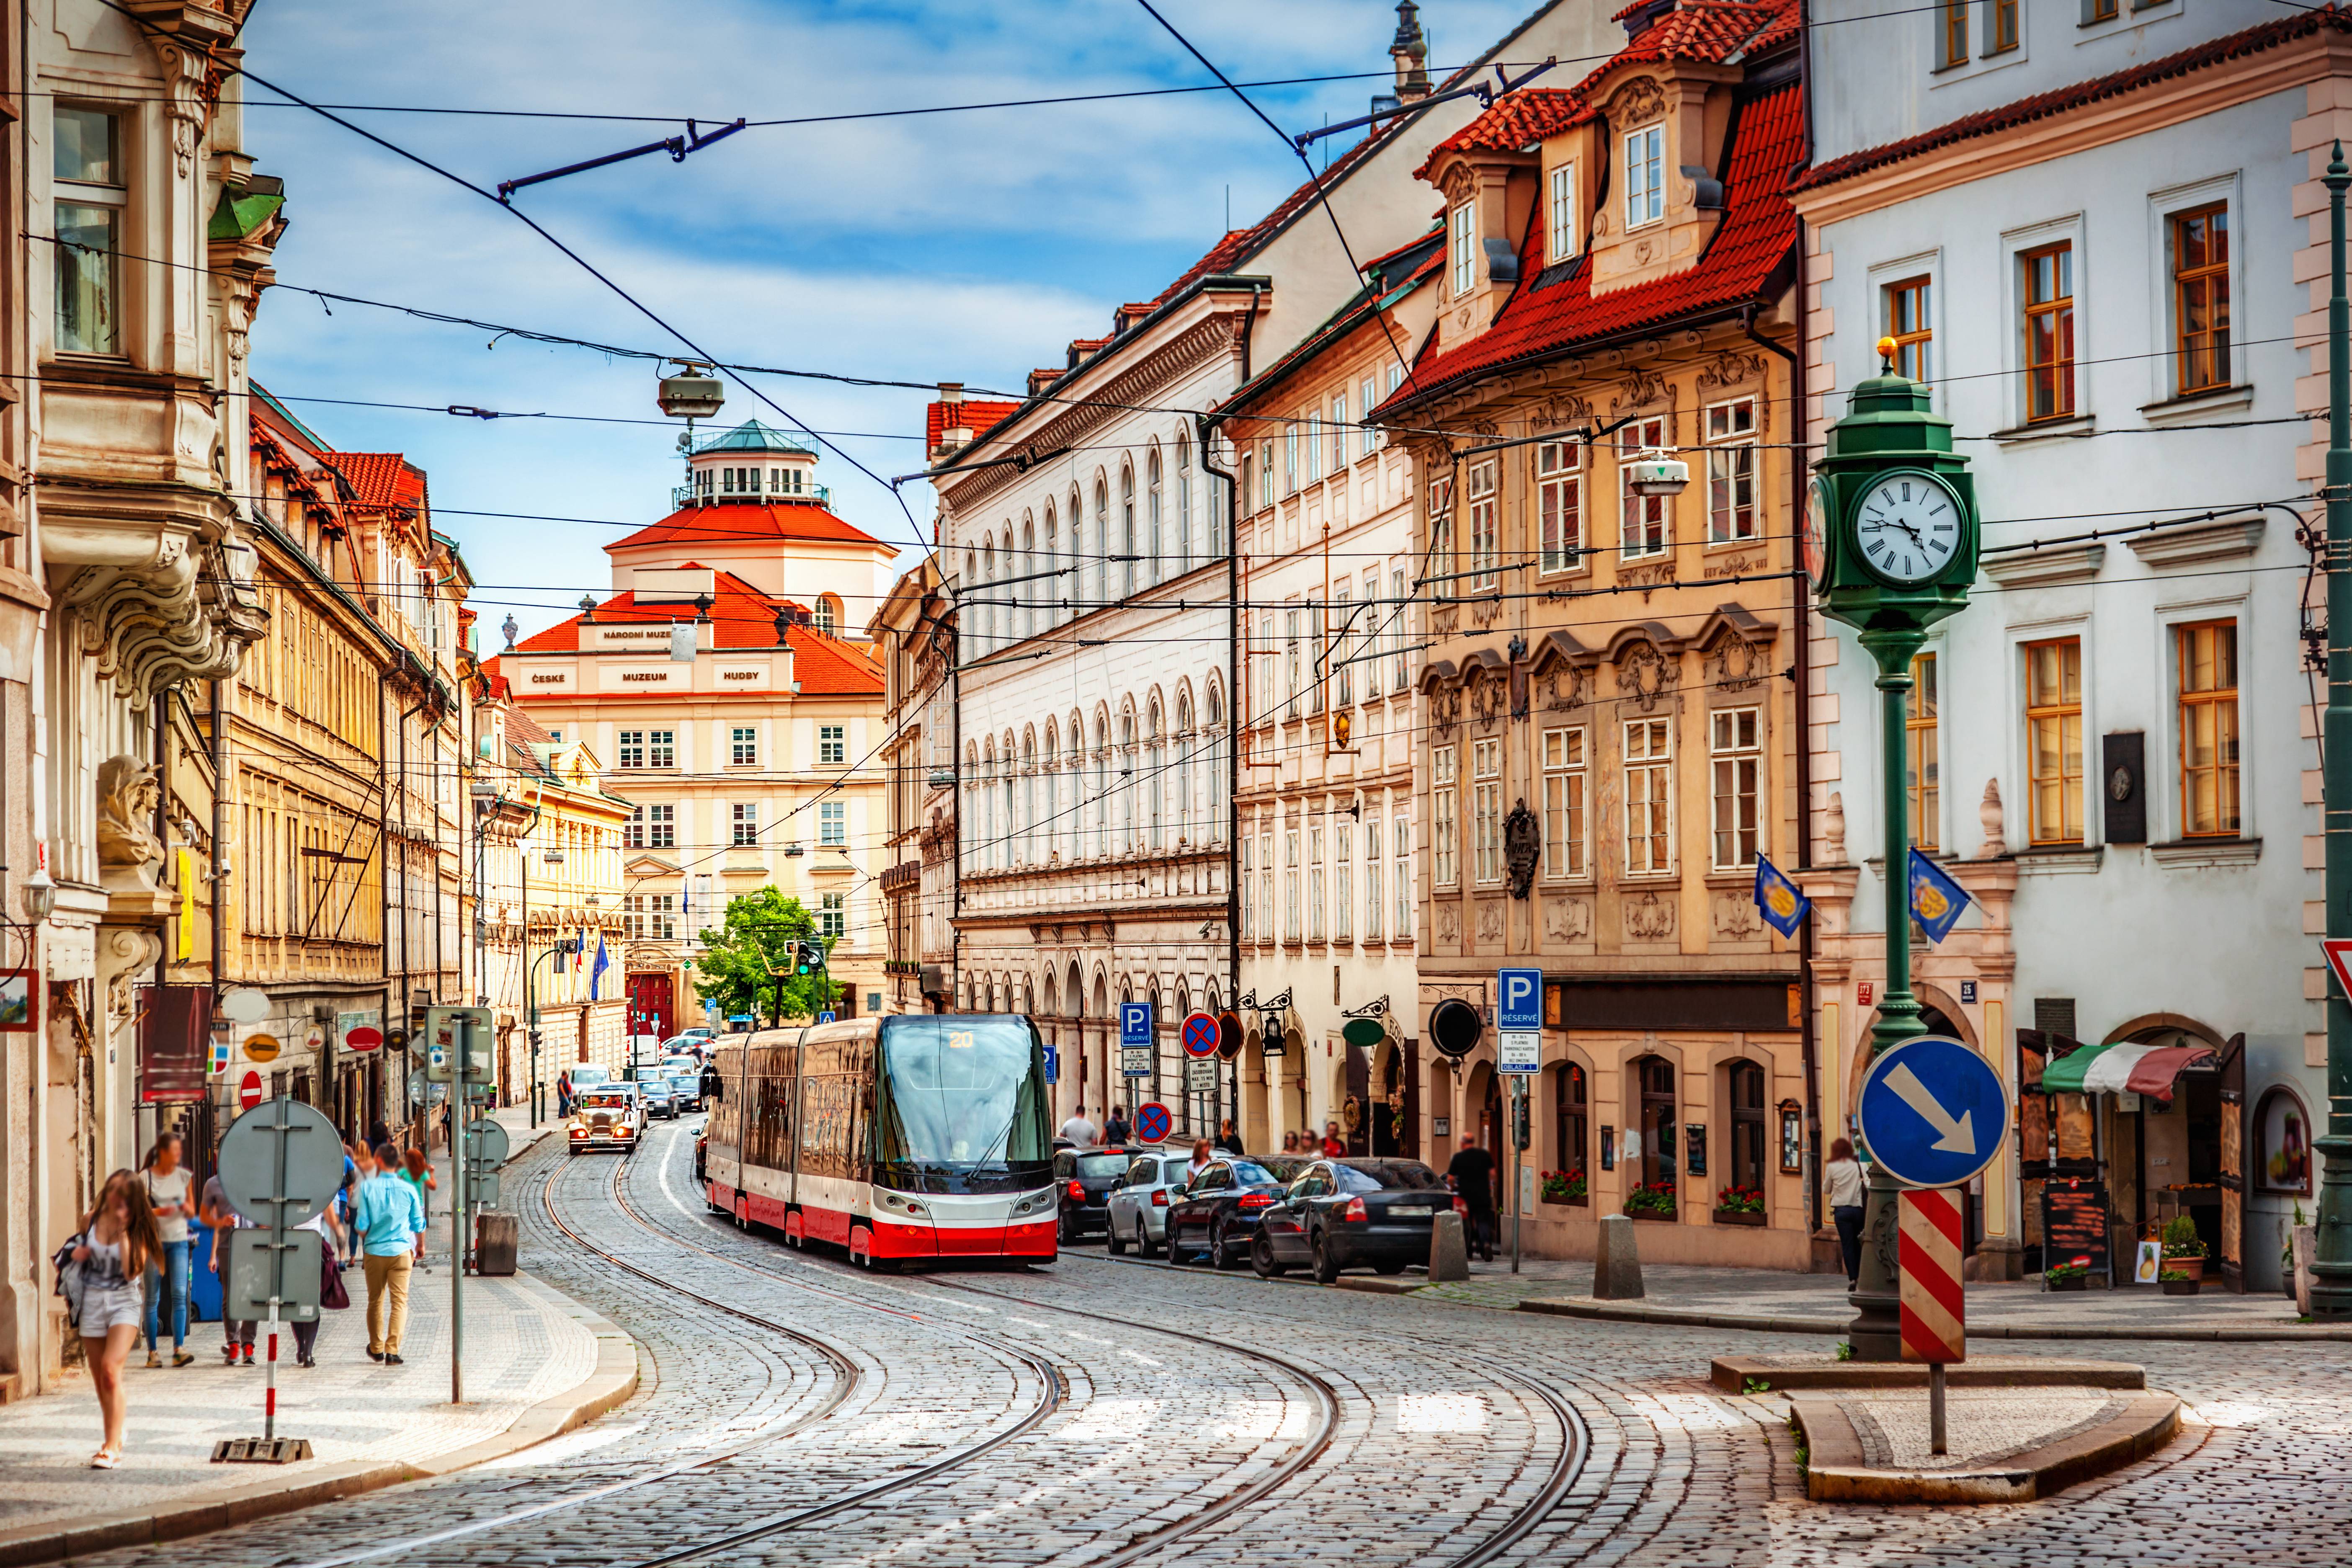 Улица в Праге, столице Чехии, проживание в которой доступно для россиян и украинцев